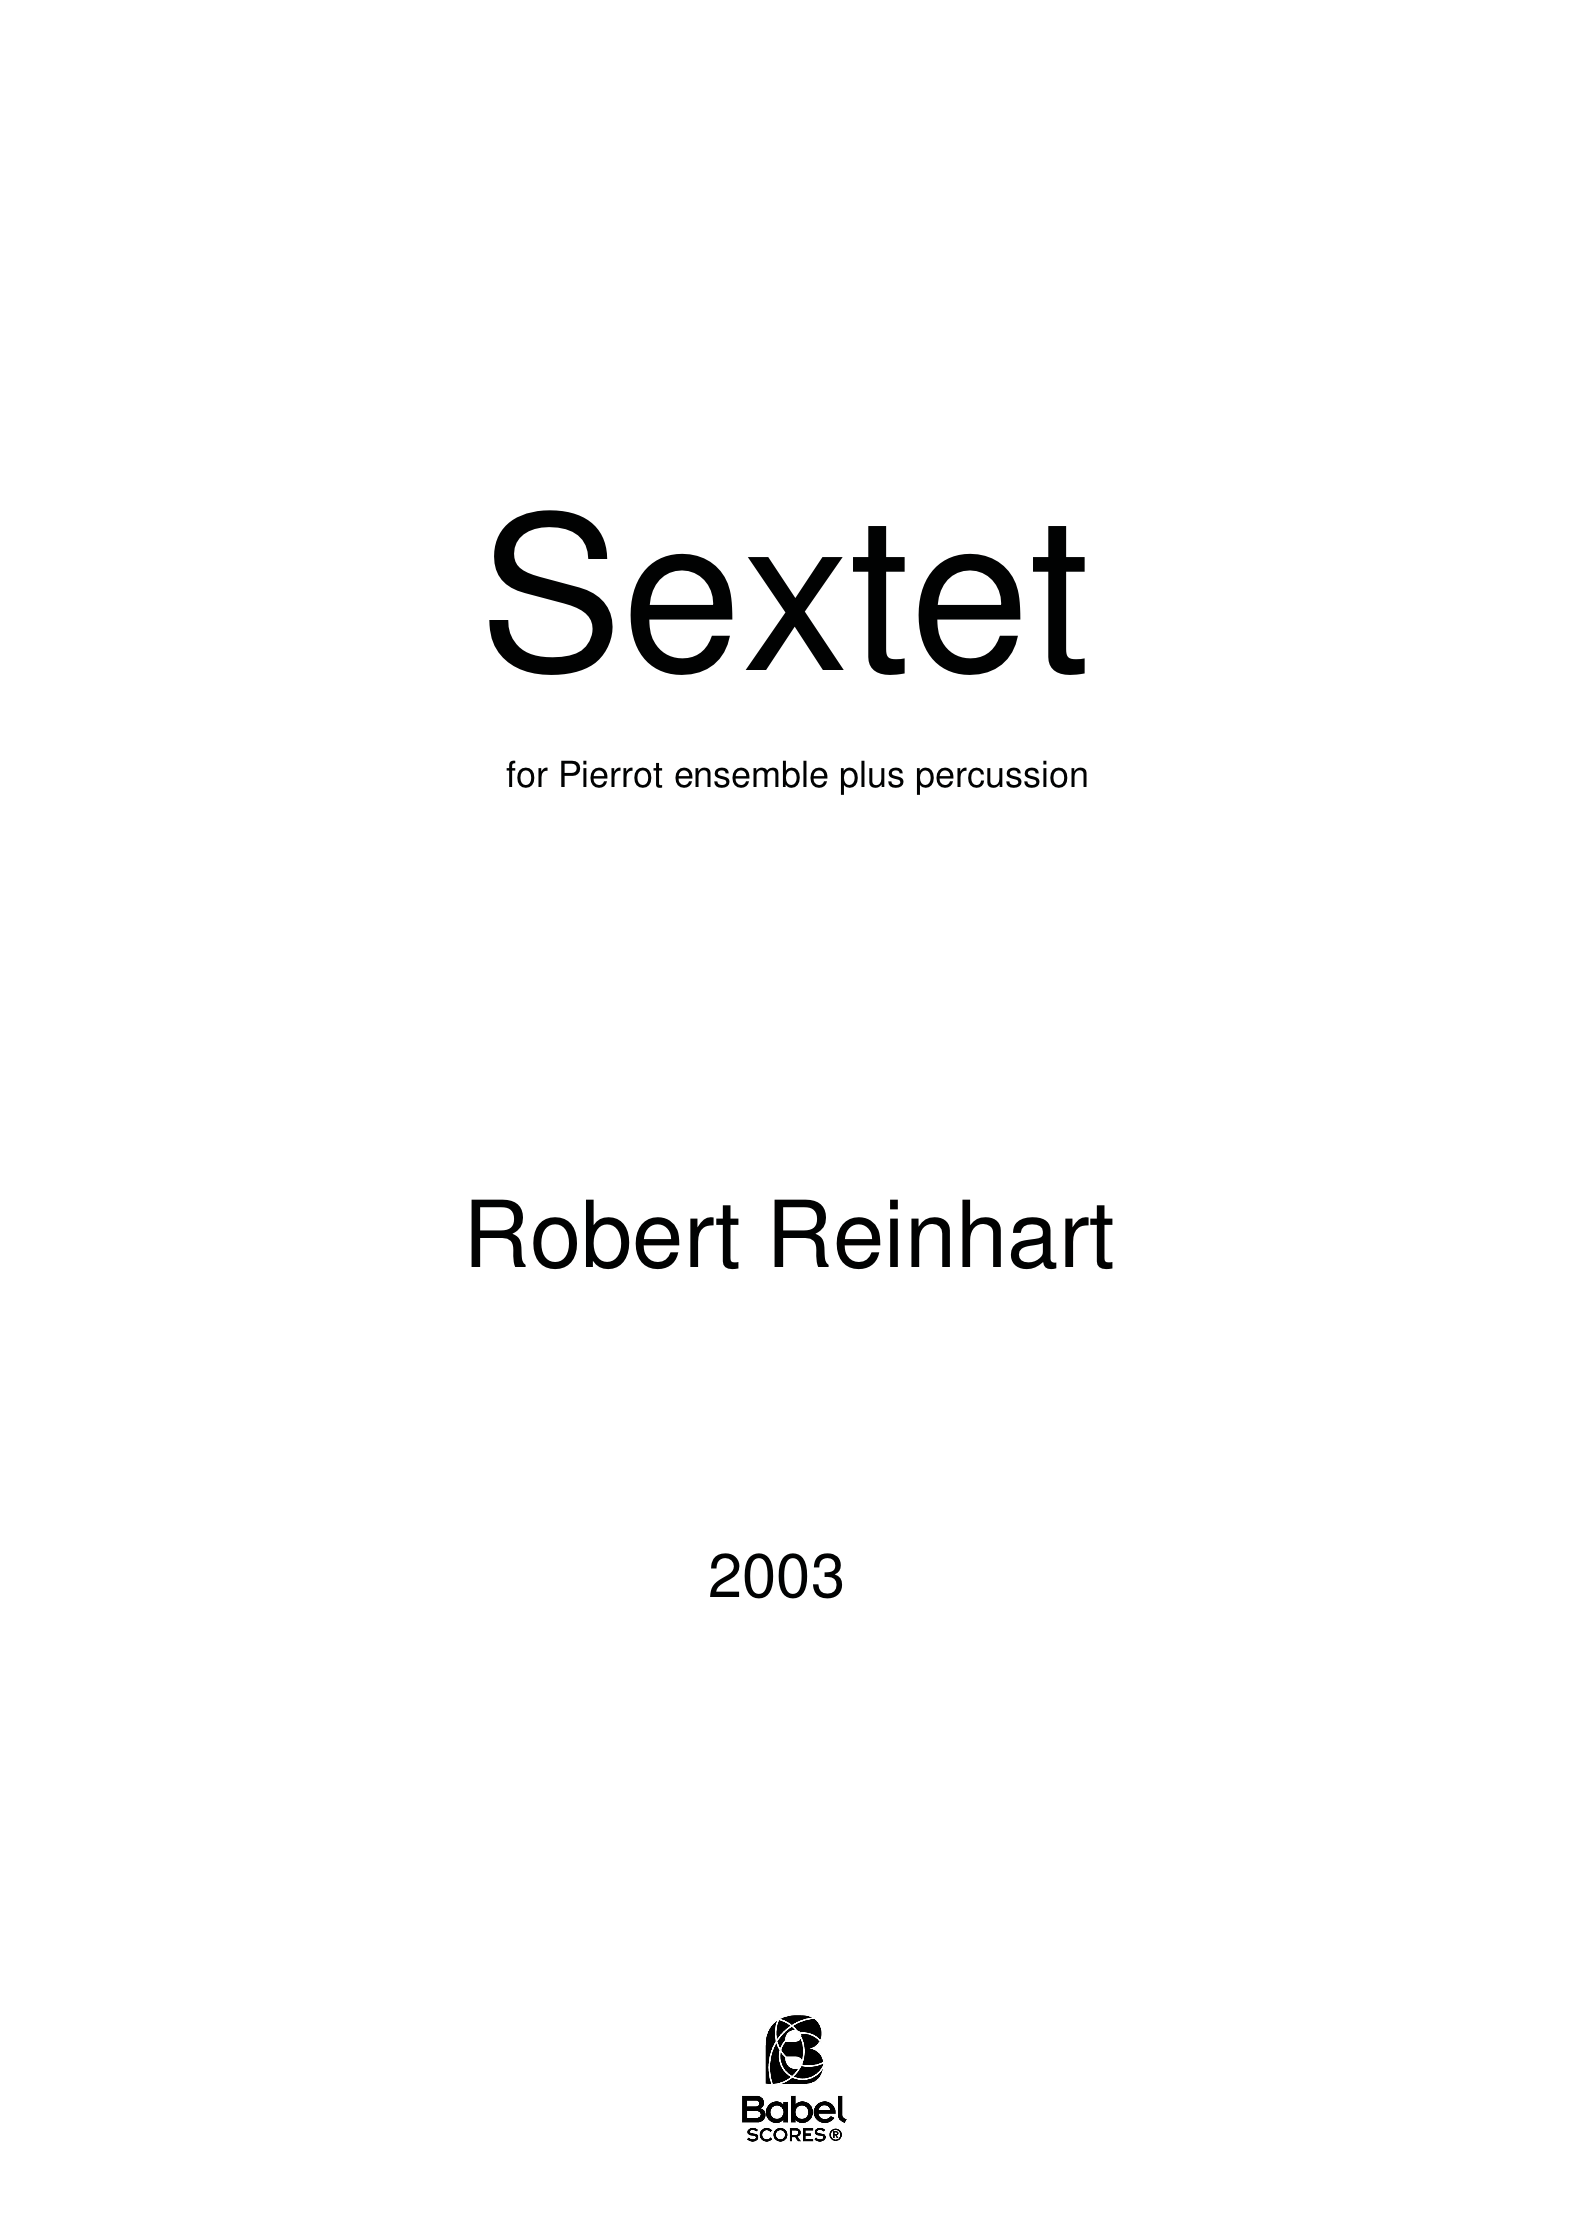 SextetReinhart A4 z